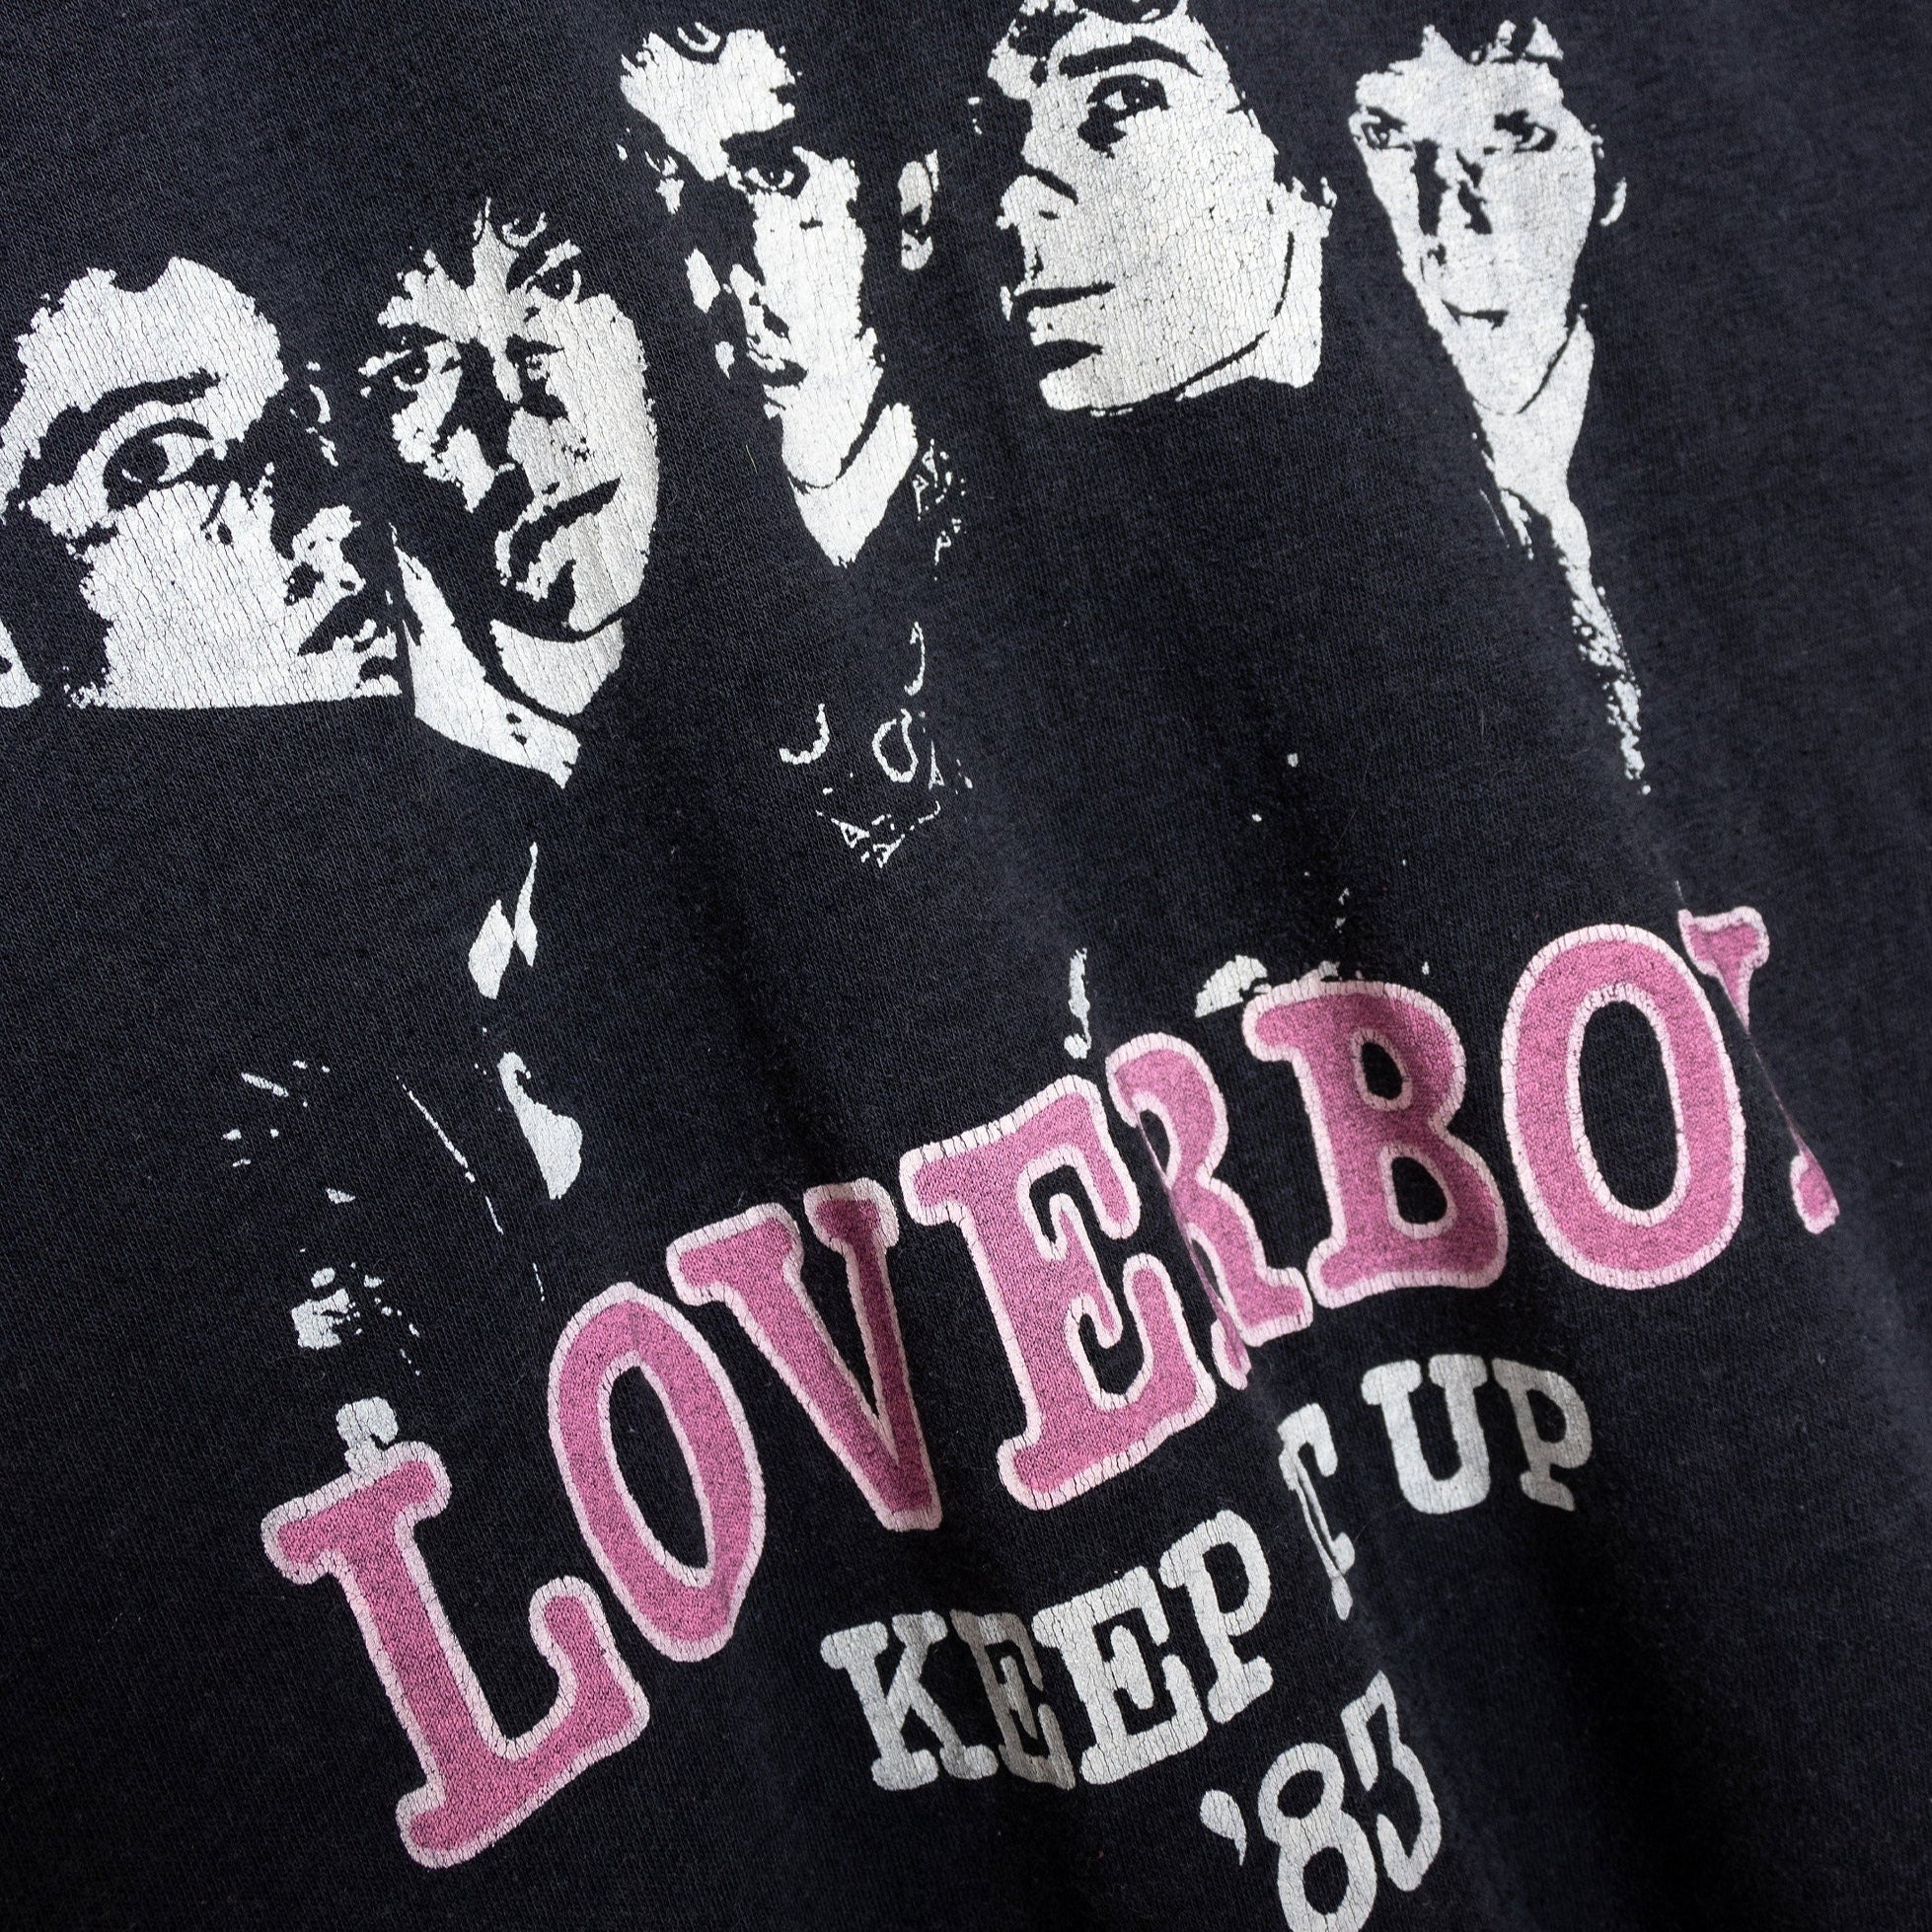 1983 Loverboy